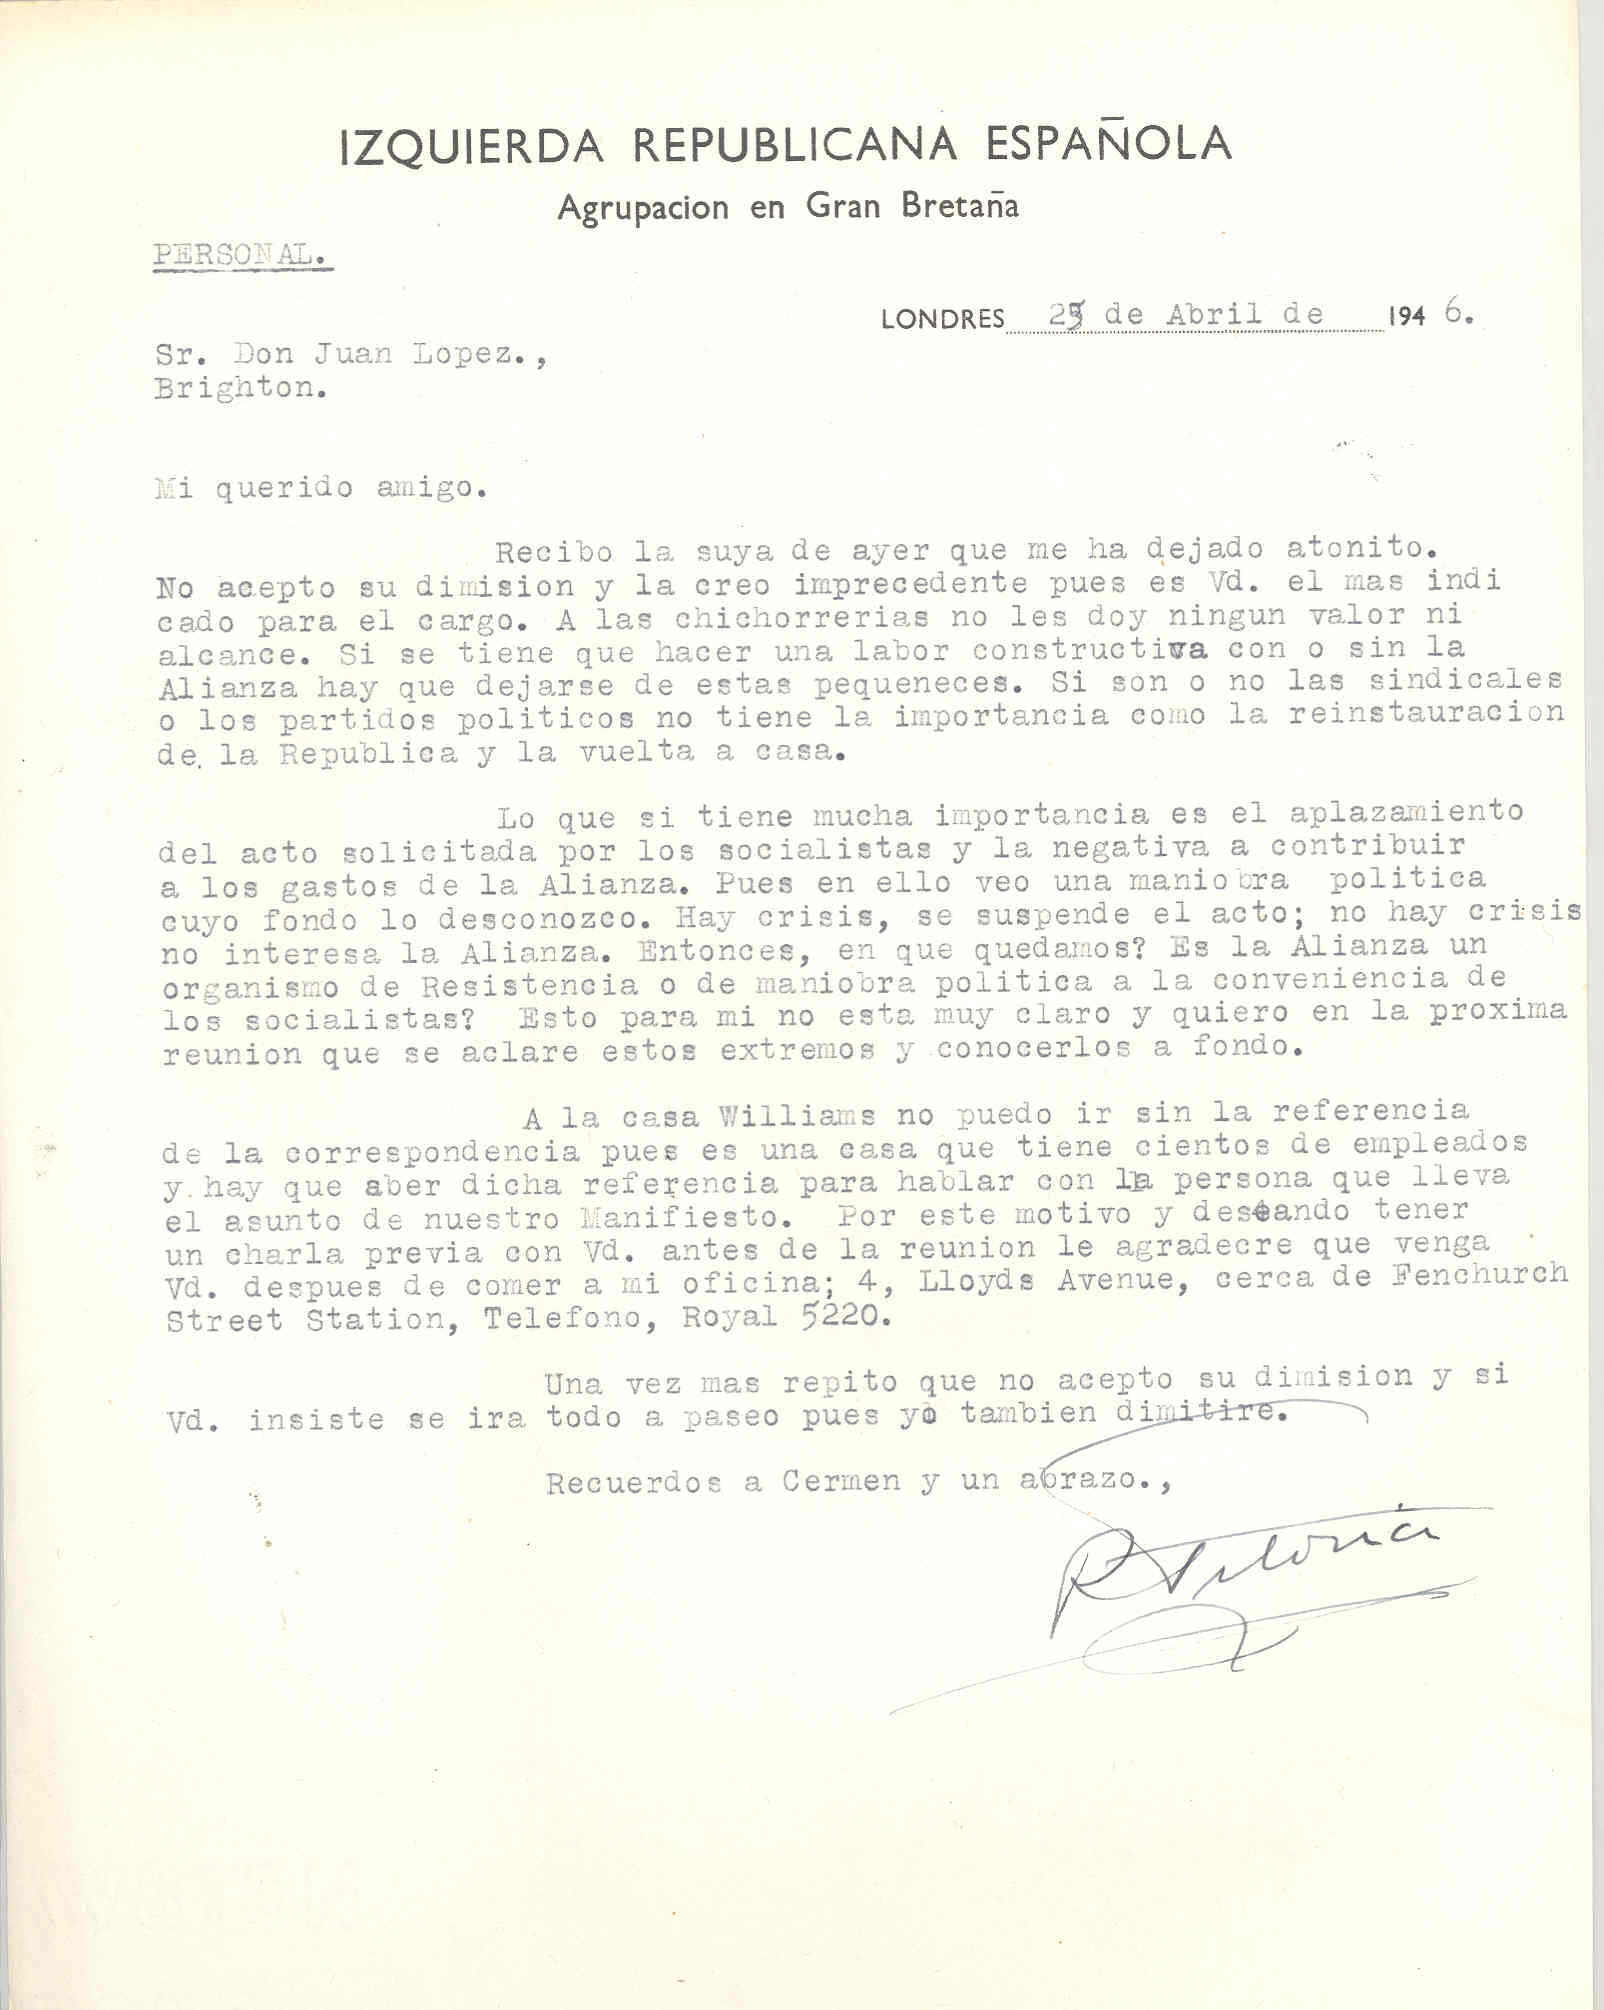 Carta de Roque Victoria explicando que no acepta la dimisión de López o él también lo hará; recalca la importancia del aplazamiento del acto de los socialistas y su negativa a contribuir a los gastos de la Alianza.